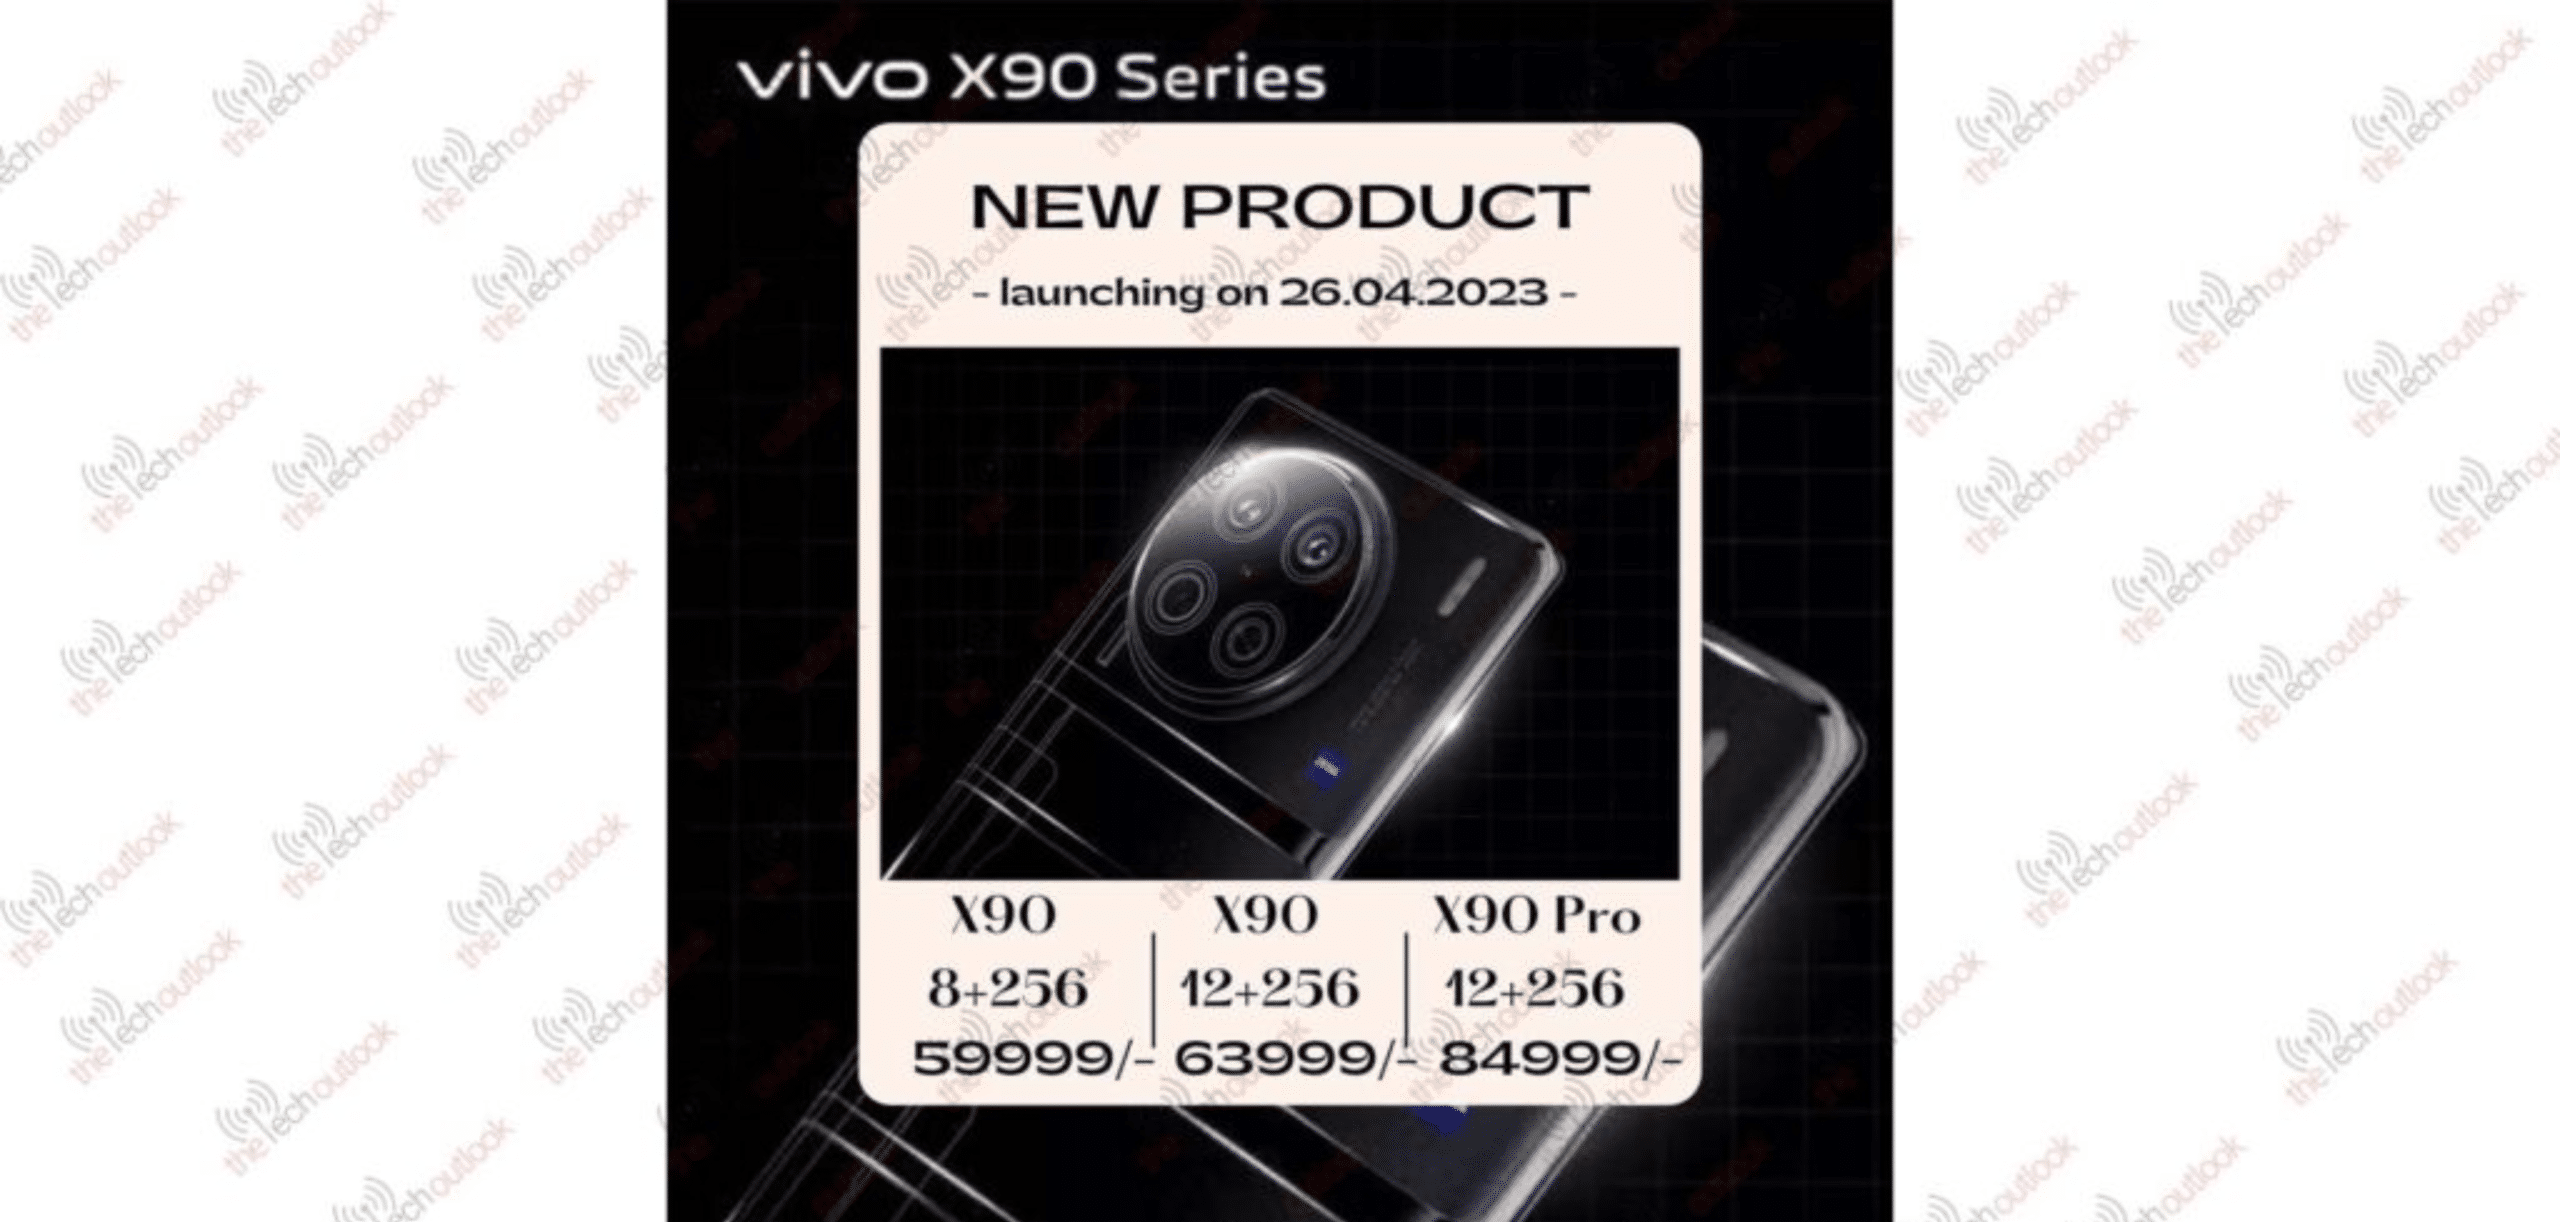 Vivo X90 and Vivo X90 Pro India Prices